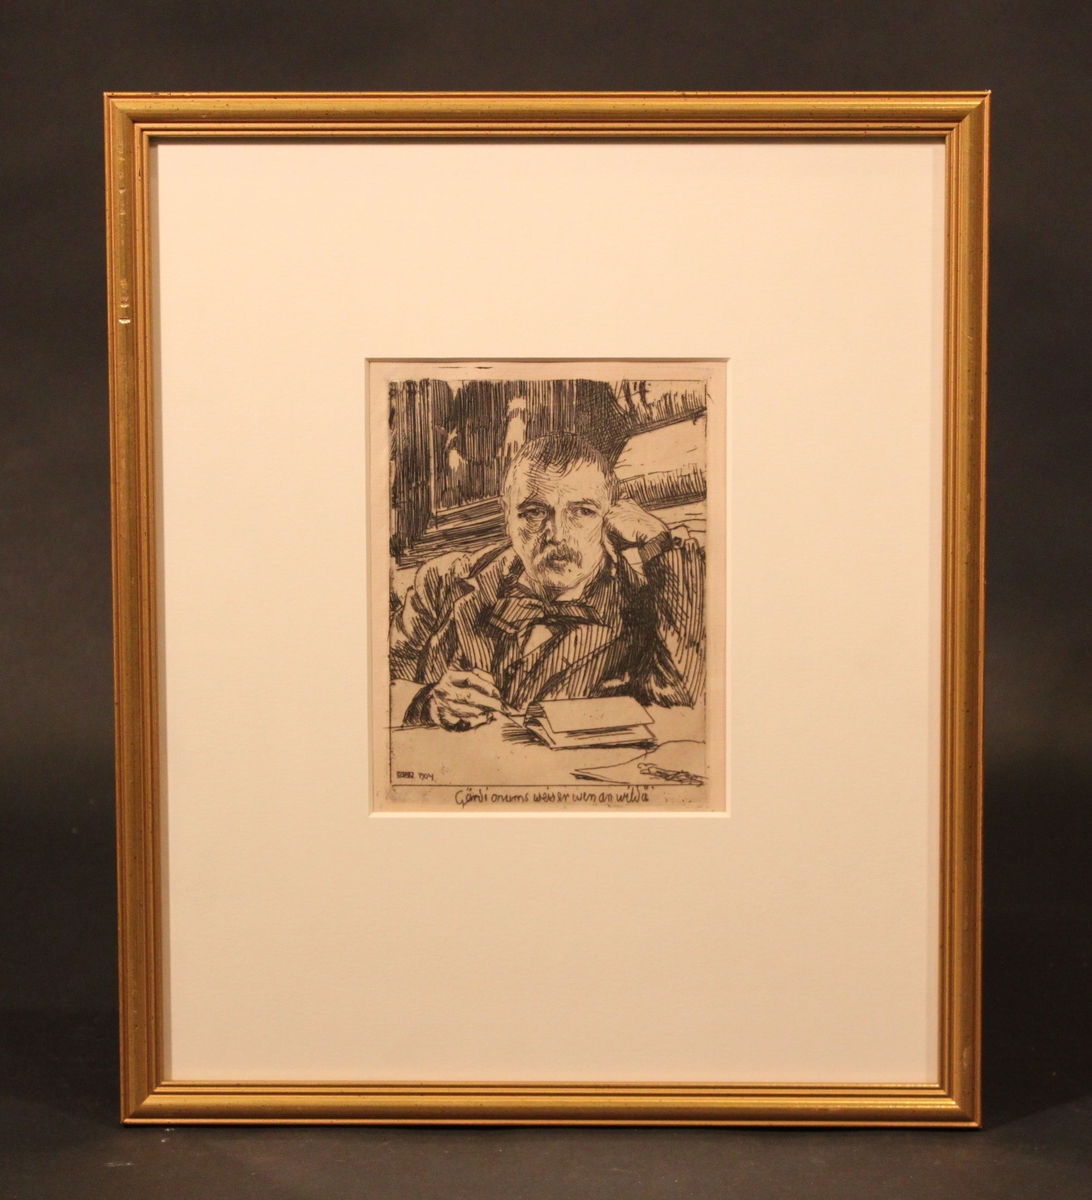 Etsning, självporträtt av Anders Zorn. Bröstbild Zorn vilar huvudet mot vänster hand och håller en penna i höger. 